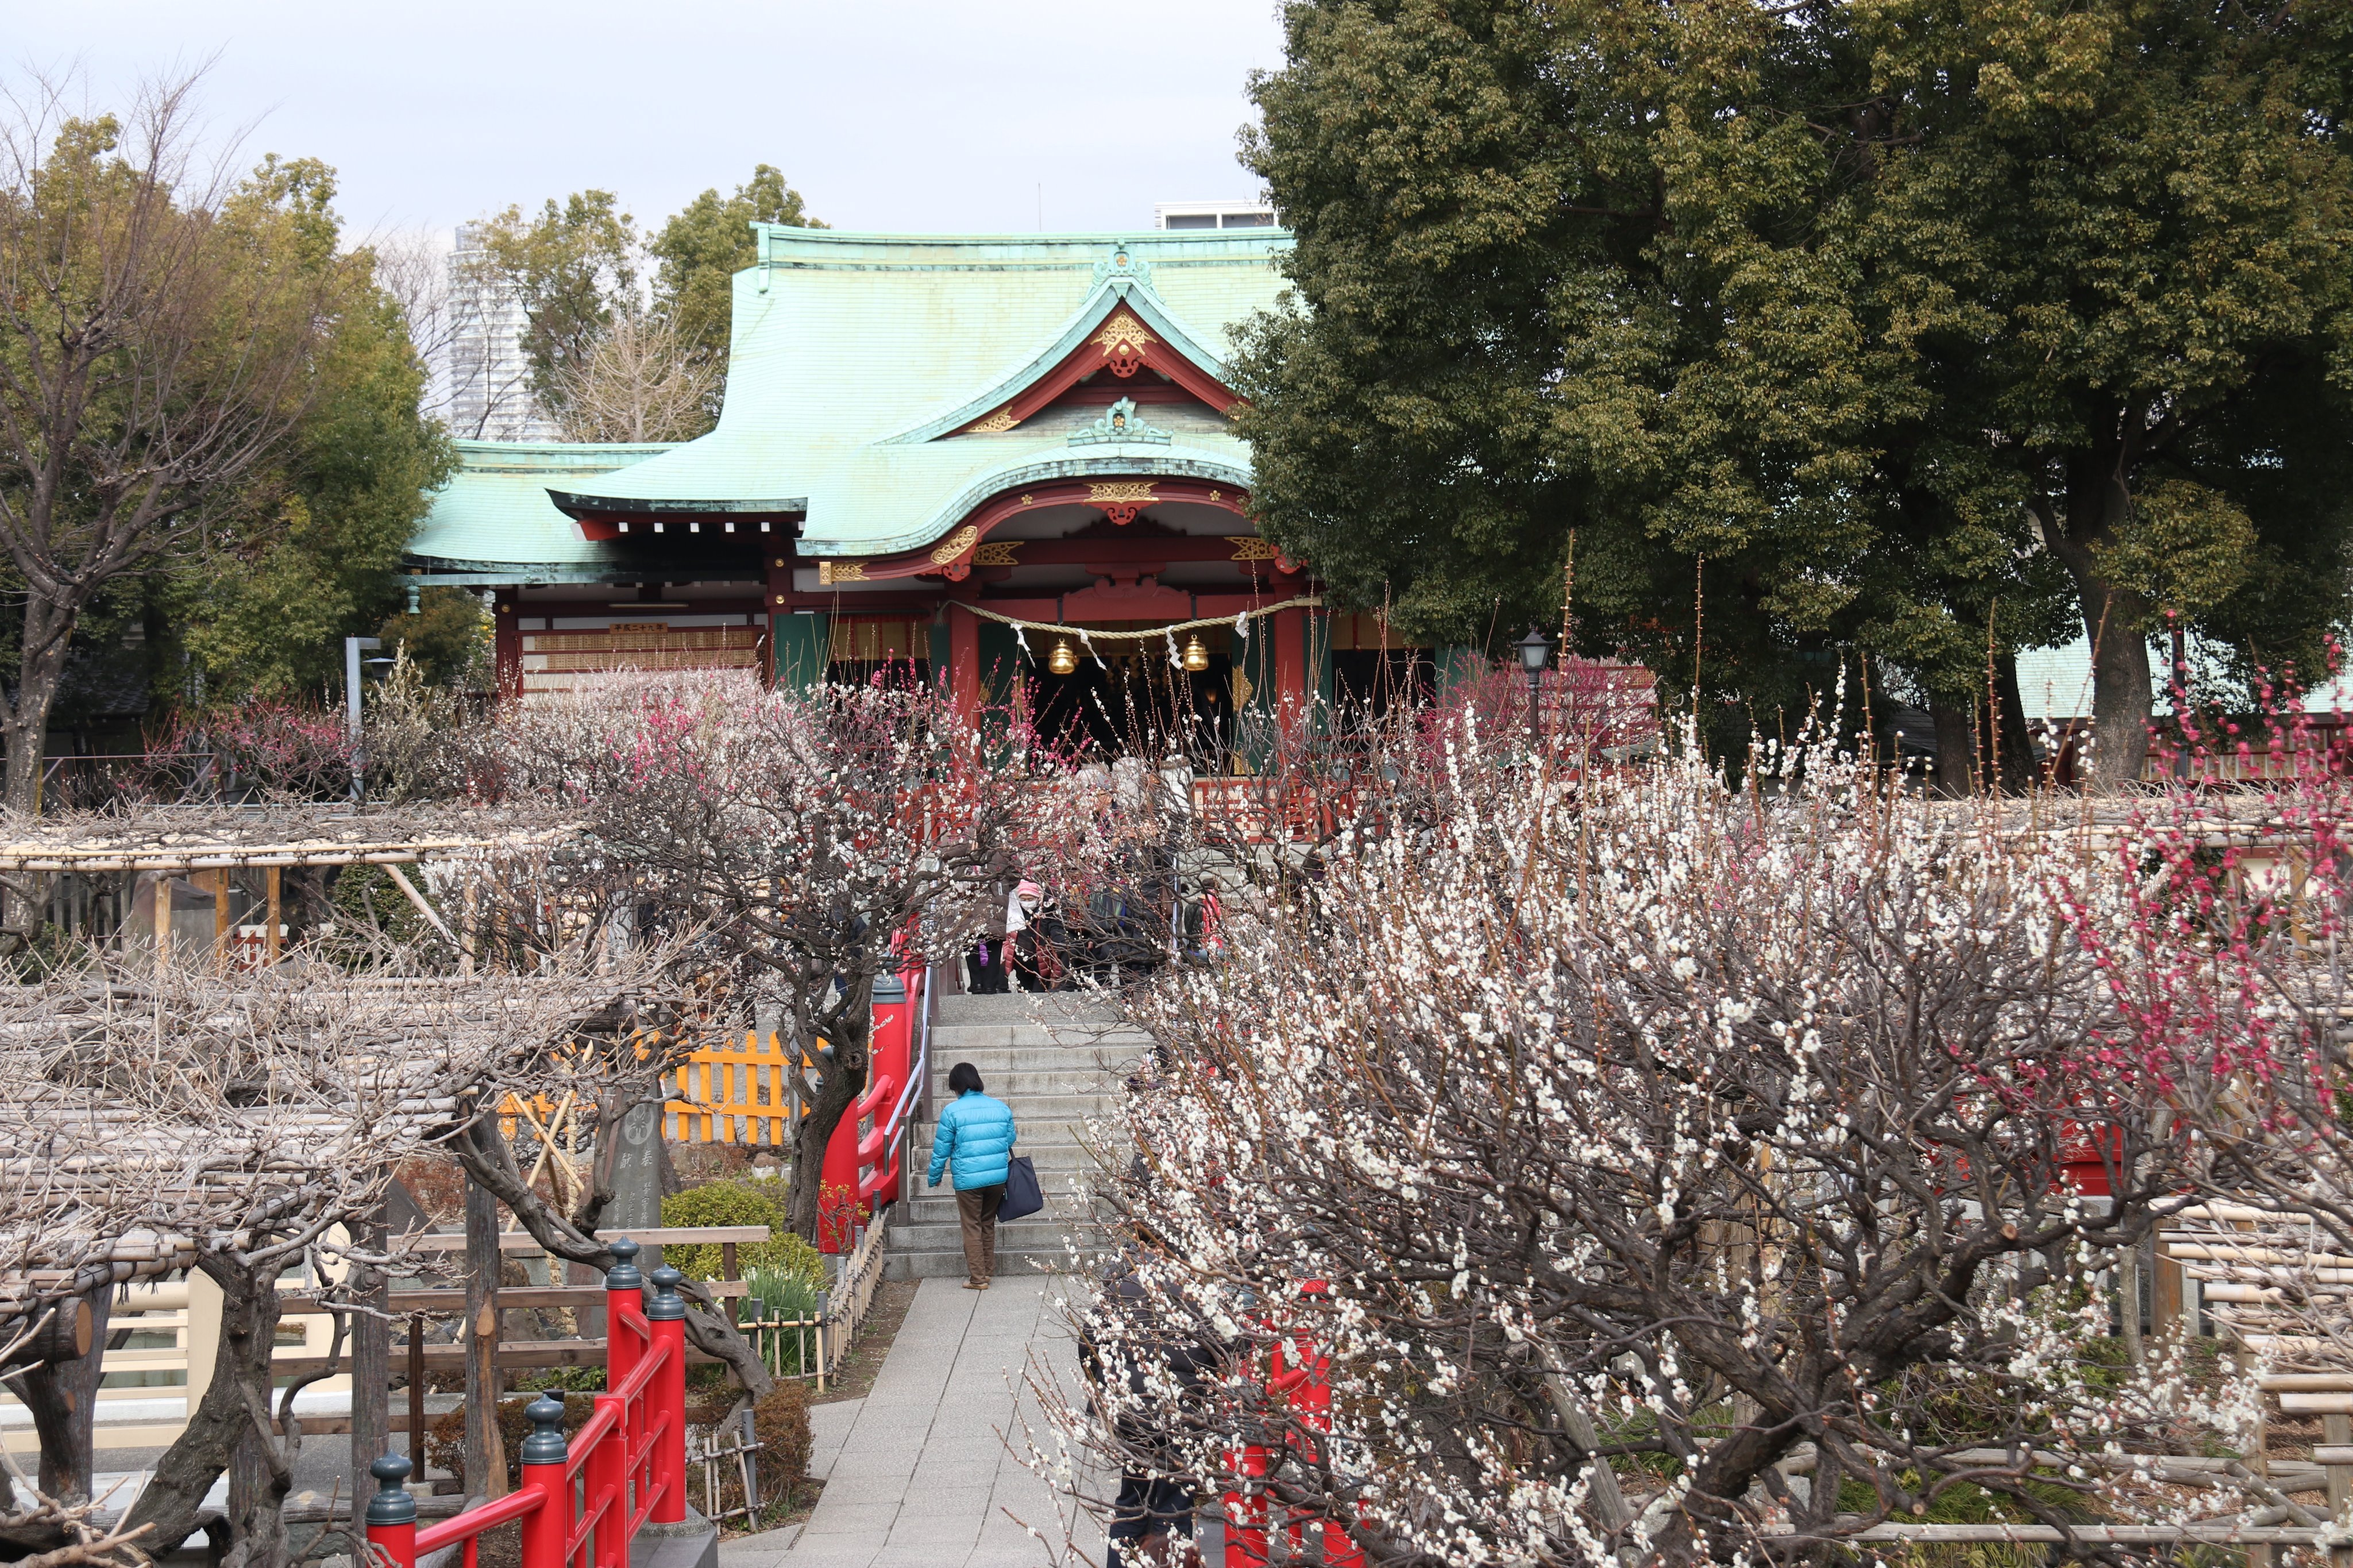 江東区 亀戸天神社の梅が満開に 亀戸天神社の境内の梅 が満開となっています 紅白 さまざまな種類の花と香りを楽しめます 3 5まで梅まつりも開催中 ぜひお出かけください 亀戸天神 梅 江東区 T Co Rgn74aq8ck Twitter